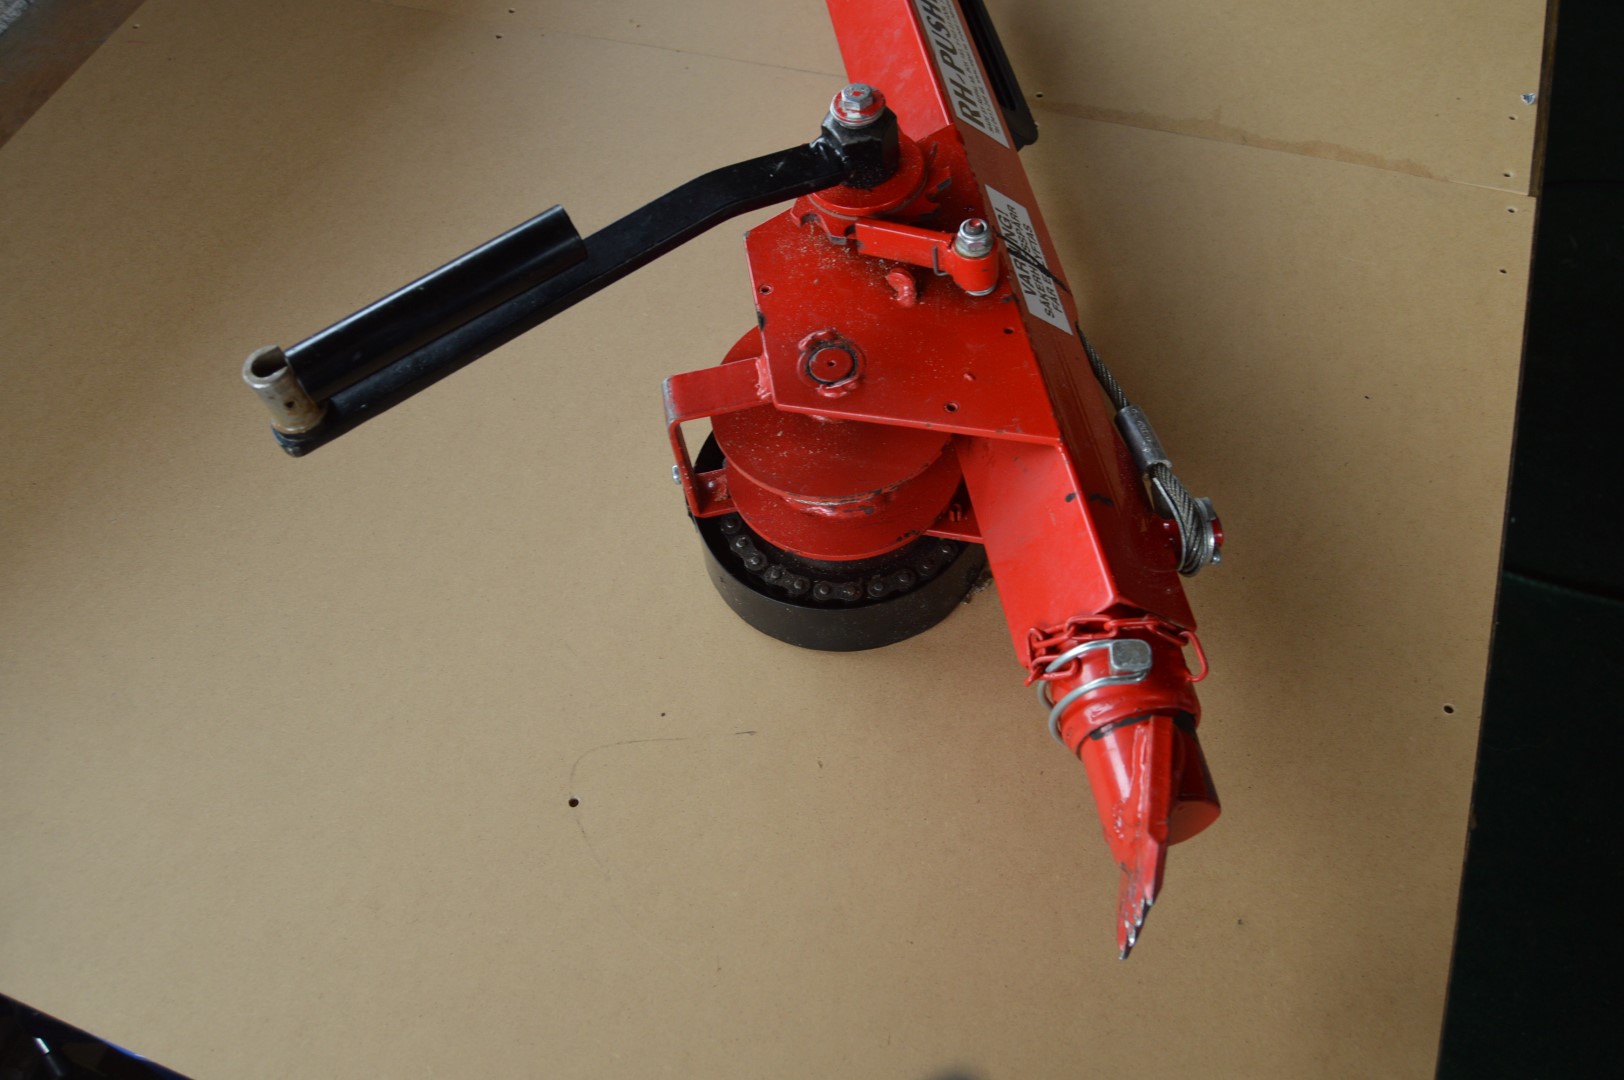 картинка Профессиональный ручной толкатель RH-Pusher VI - E996 (Tree Jack/Timber Tools) от магазина "Элит-инструмент"